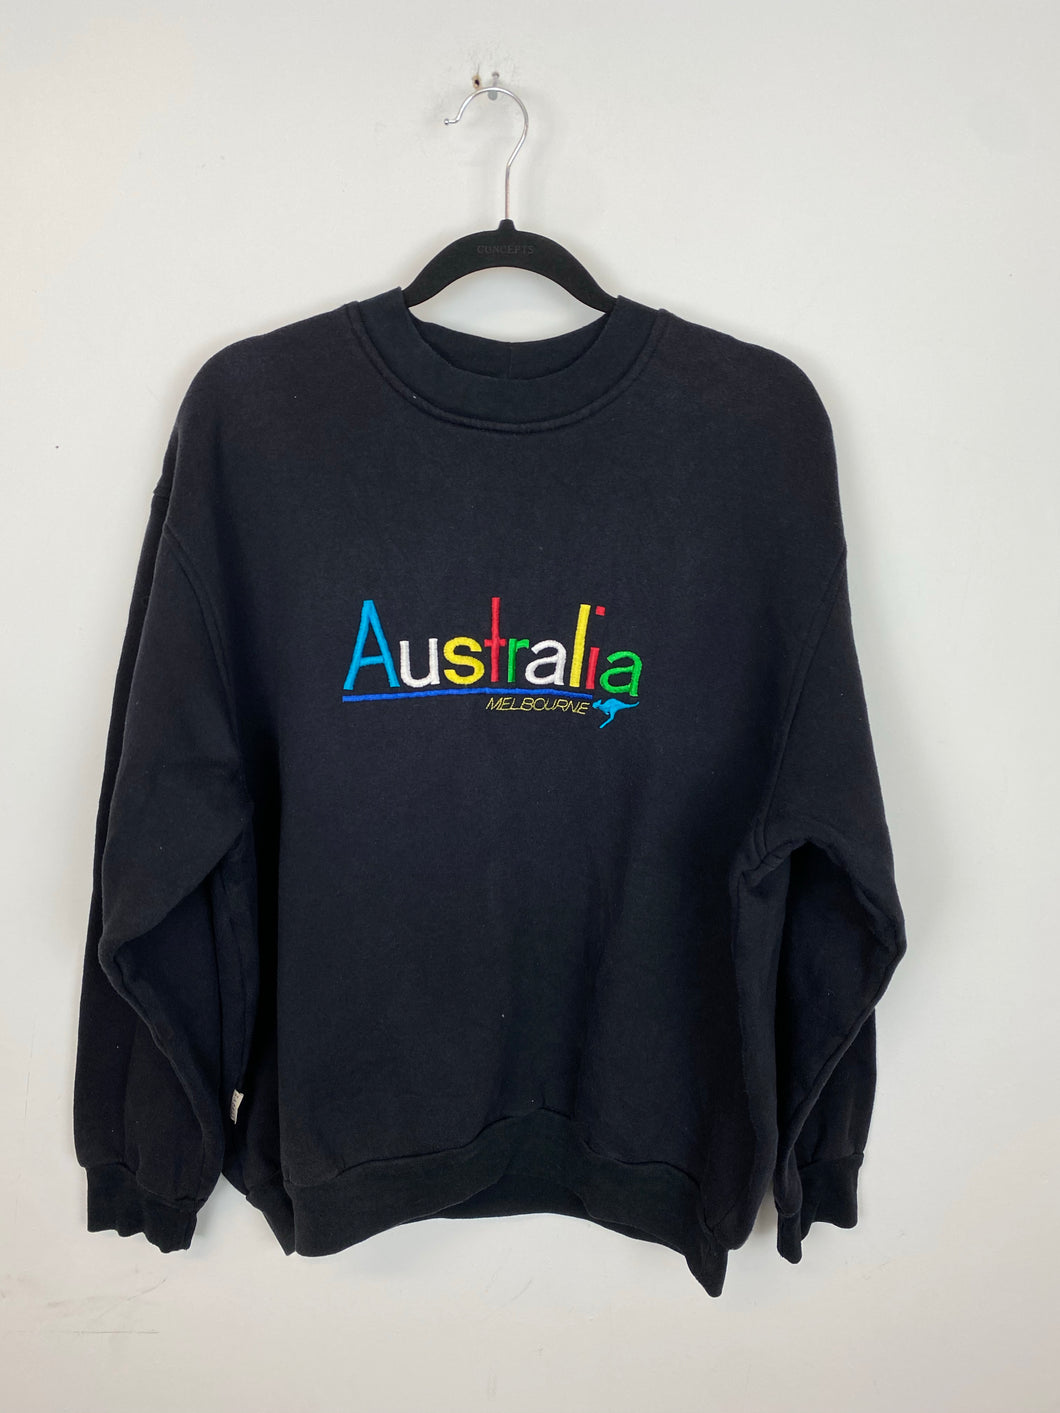 Vintage Embroidered Australia Crewneck - S